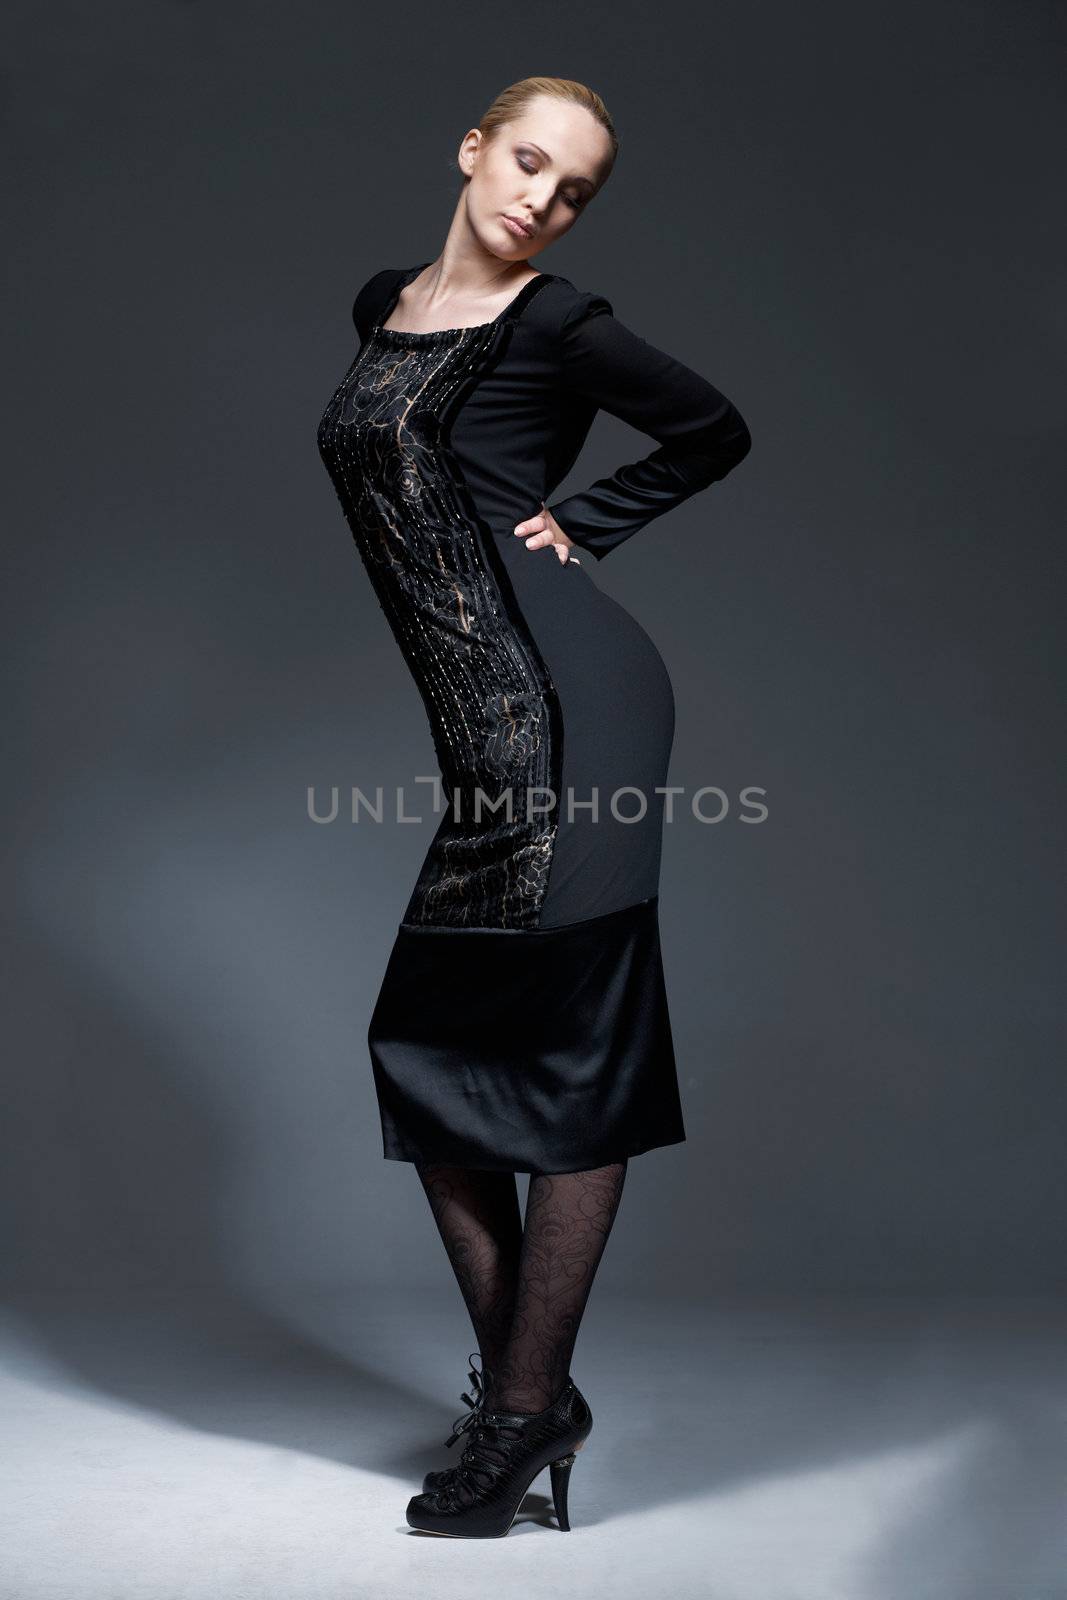 Beauty In Black Dress. by romanshyshak